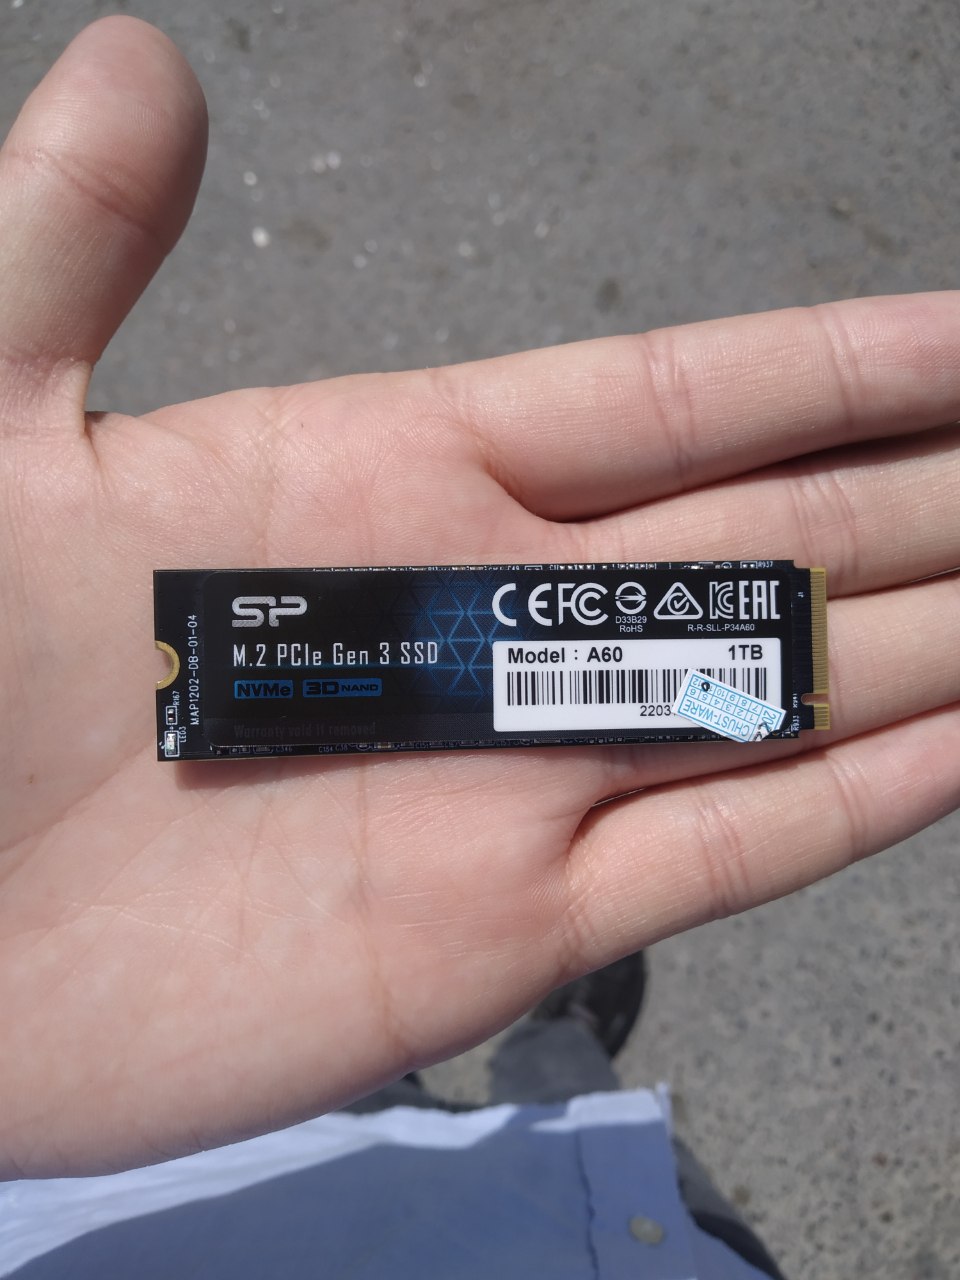 Всем привет друзья. Подскажите пожалуйста. Возможно ли восстановить данные с SSD M.2 NVMe диска?
Он не работает у меня. Ставил на новый комп, все равно не читает. Мастер сказал что надо заменить на новый ssd.